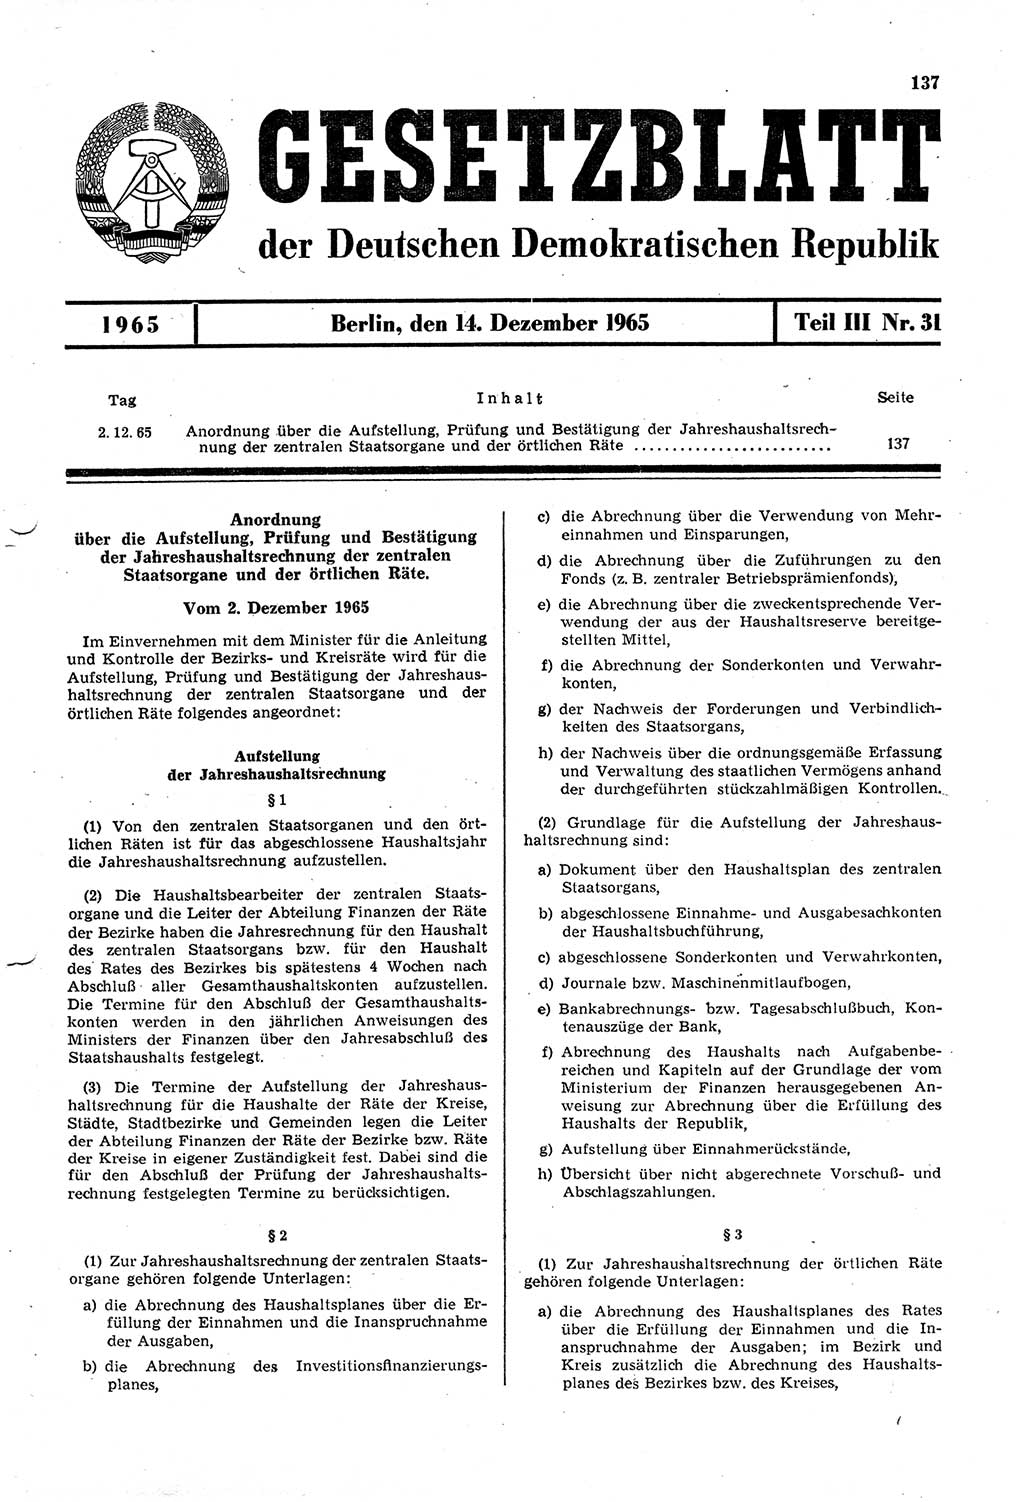 Gesetzblatt (GBl.) der Deutschen Demokratischen Republik (DDR) Teil ⅠⅠⅠ 1965, Seite 137 (GBl. DDR ⅠⅠⅠ 1965, S. 137)